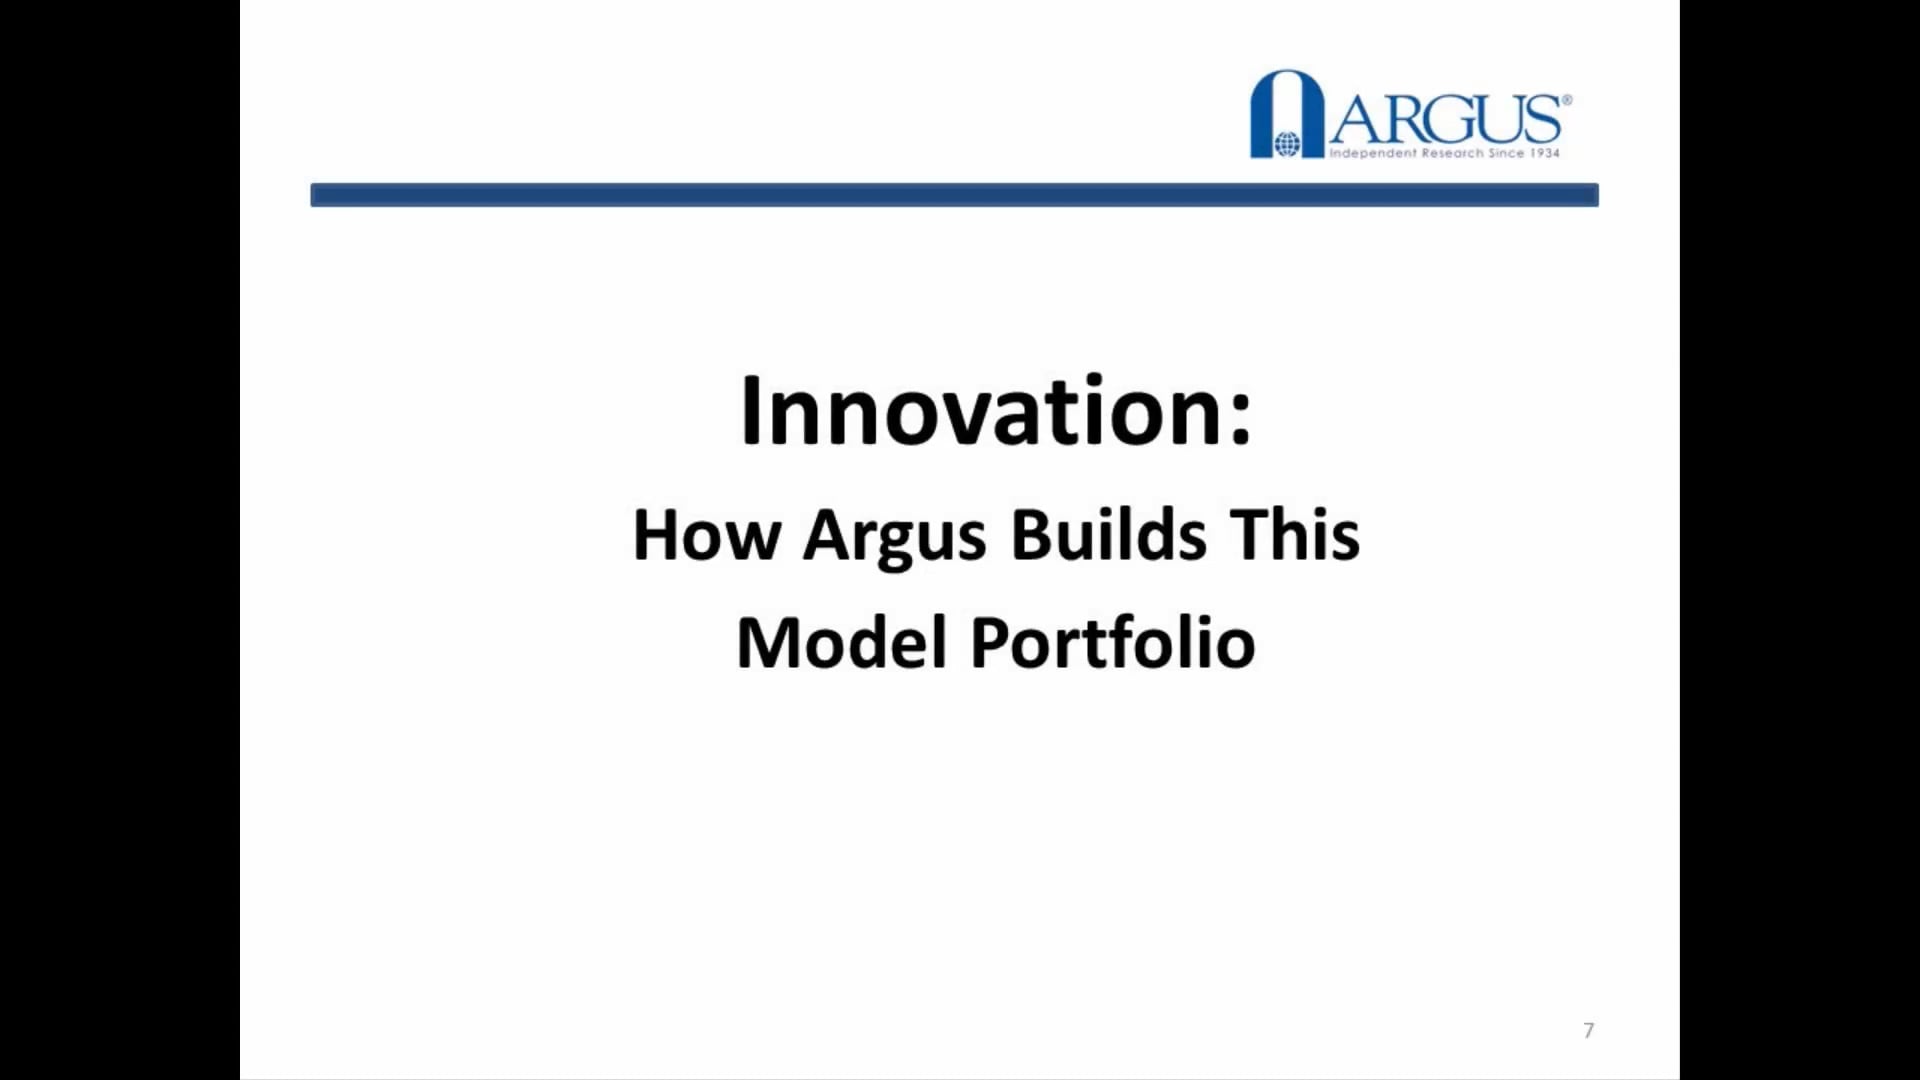 How Argus Builds the Innovators Model Portfolio